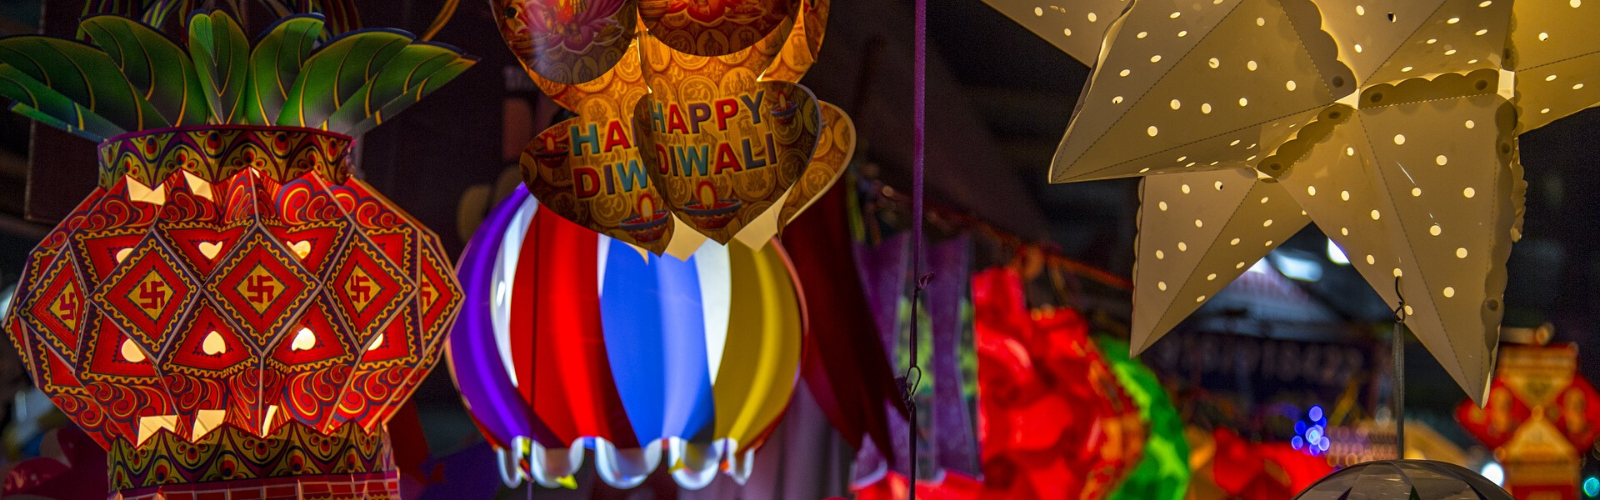 Diwali, fête des lumières au Rajasthan Double Sens